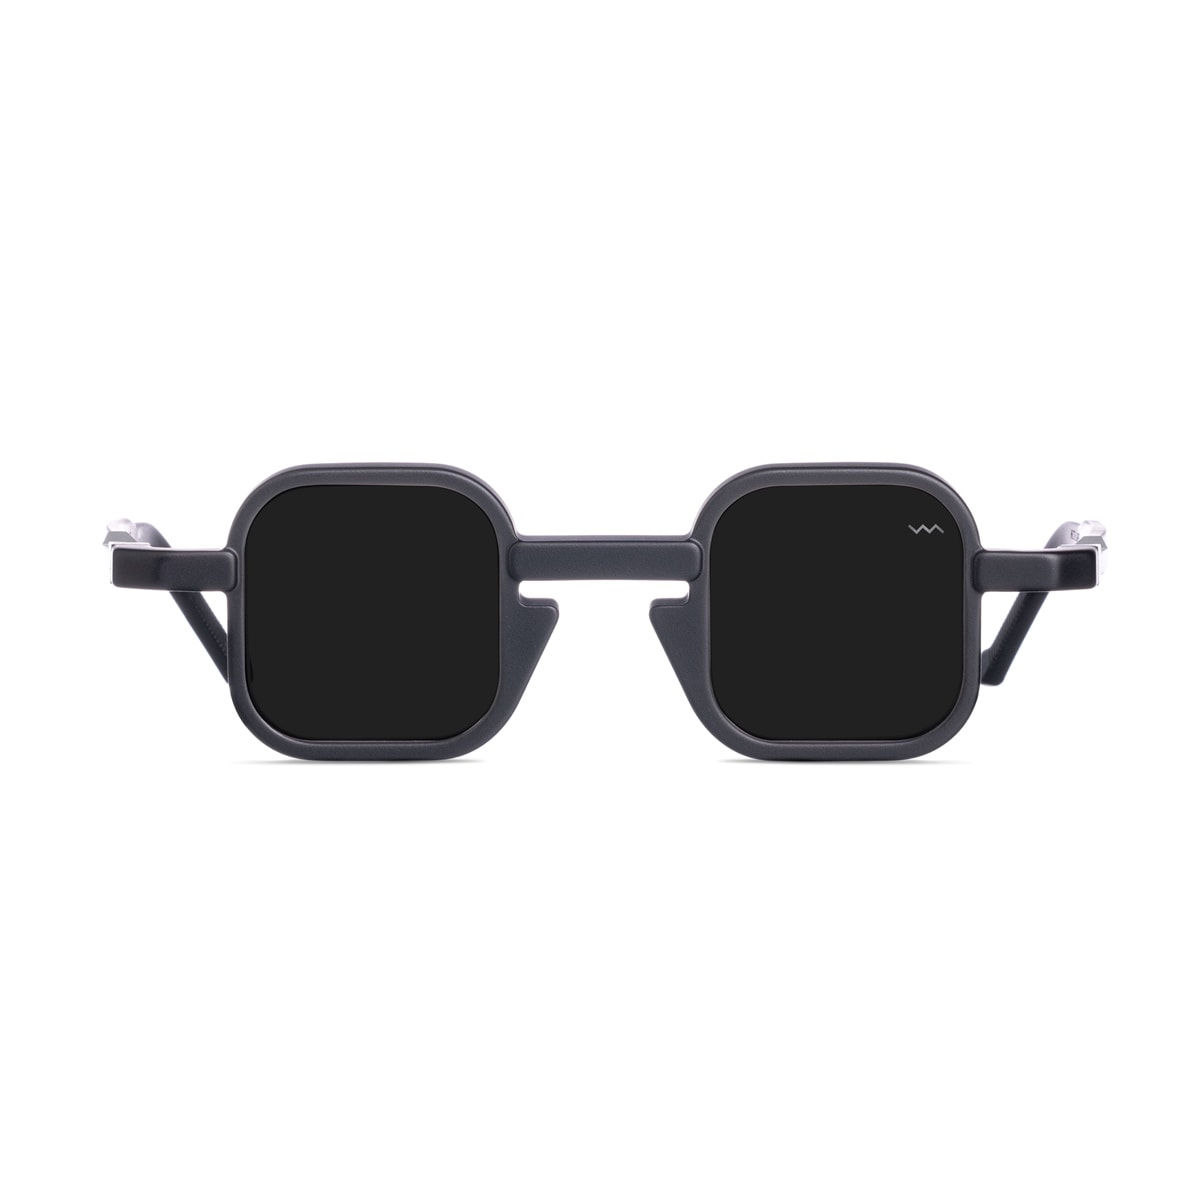 Wl0067 White Label Black Matte Sunglasses